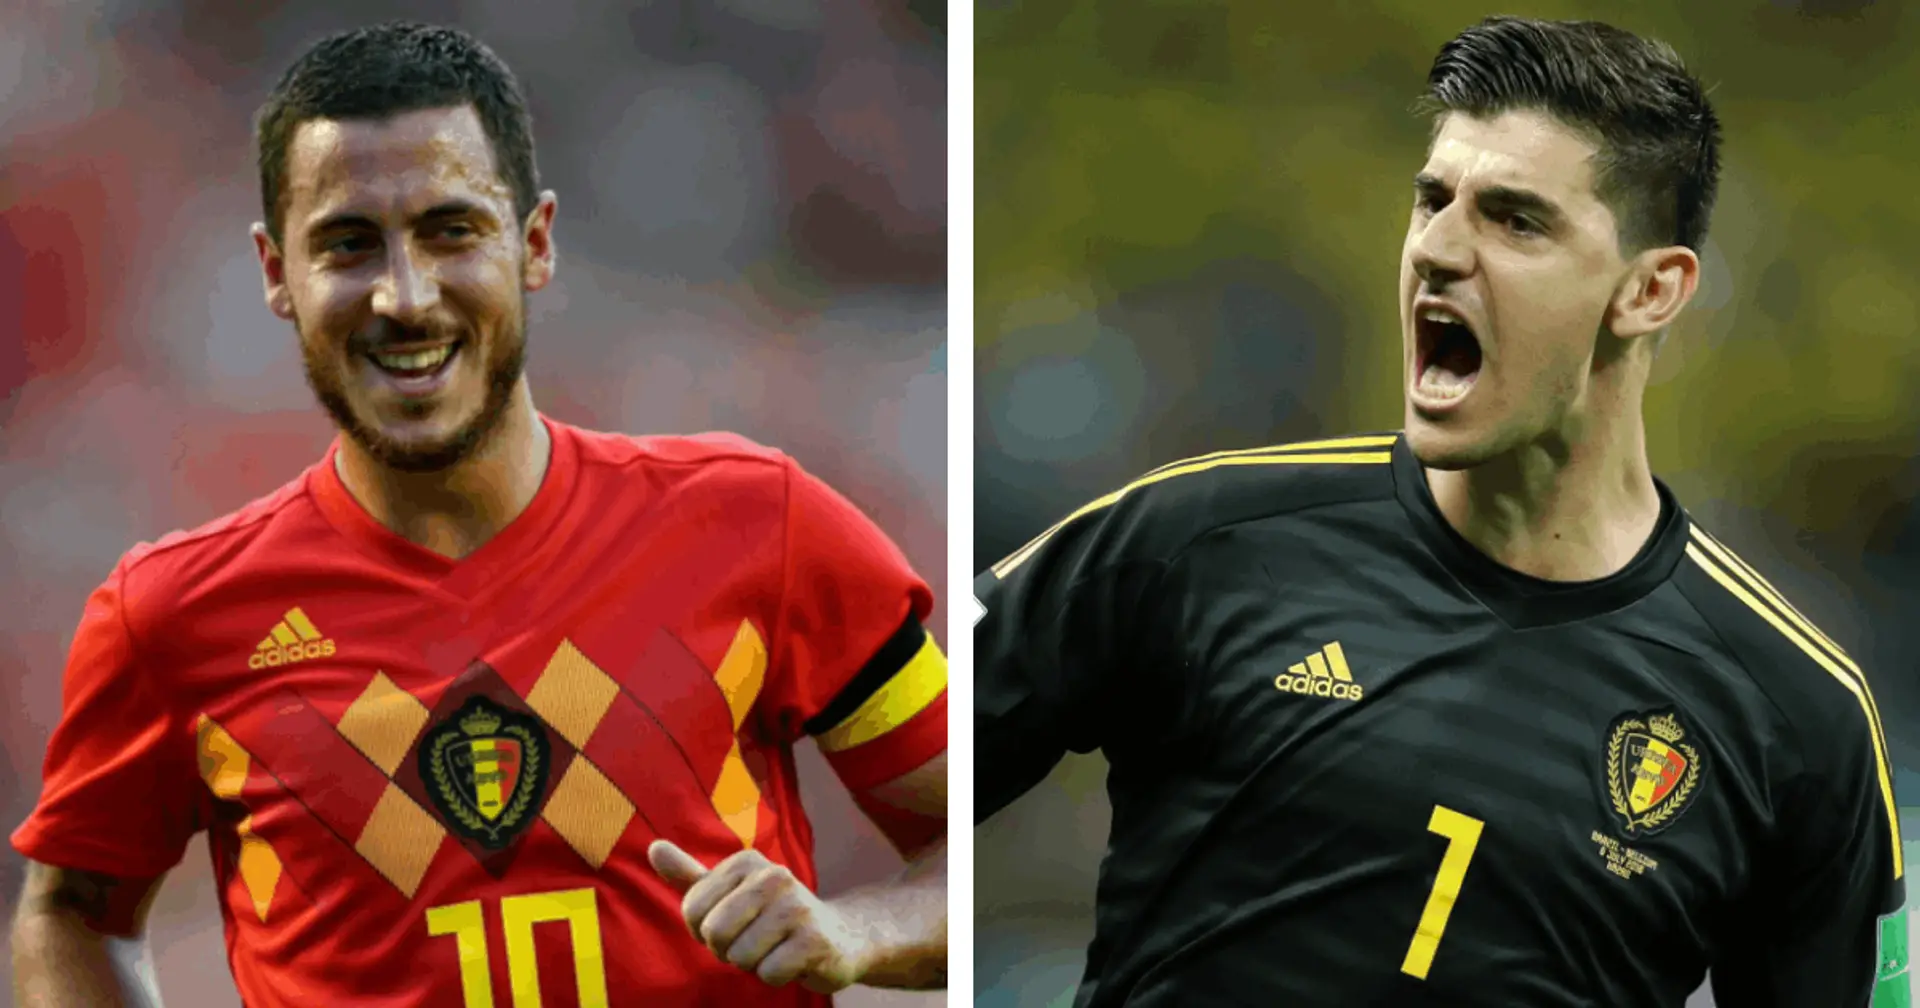 Courtois et Hazard dans le top 5 des joueurs les plus chers de l'équipe de Belgique pour l'Euro 2020